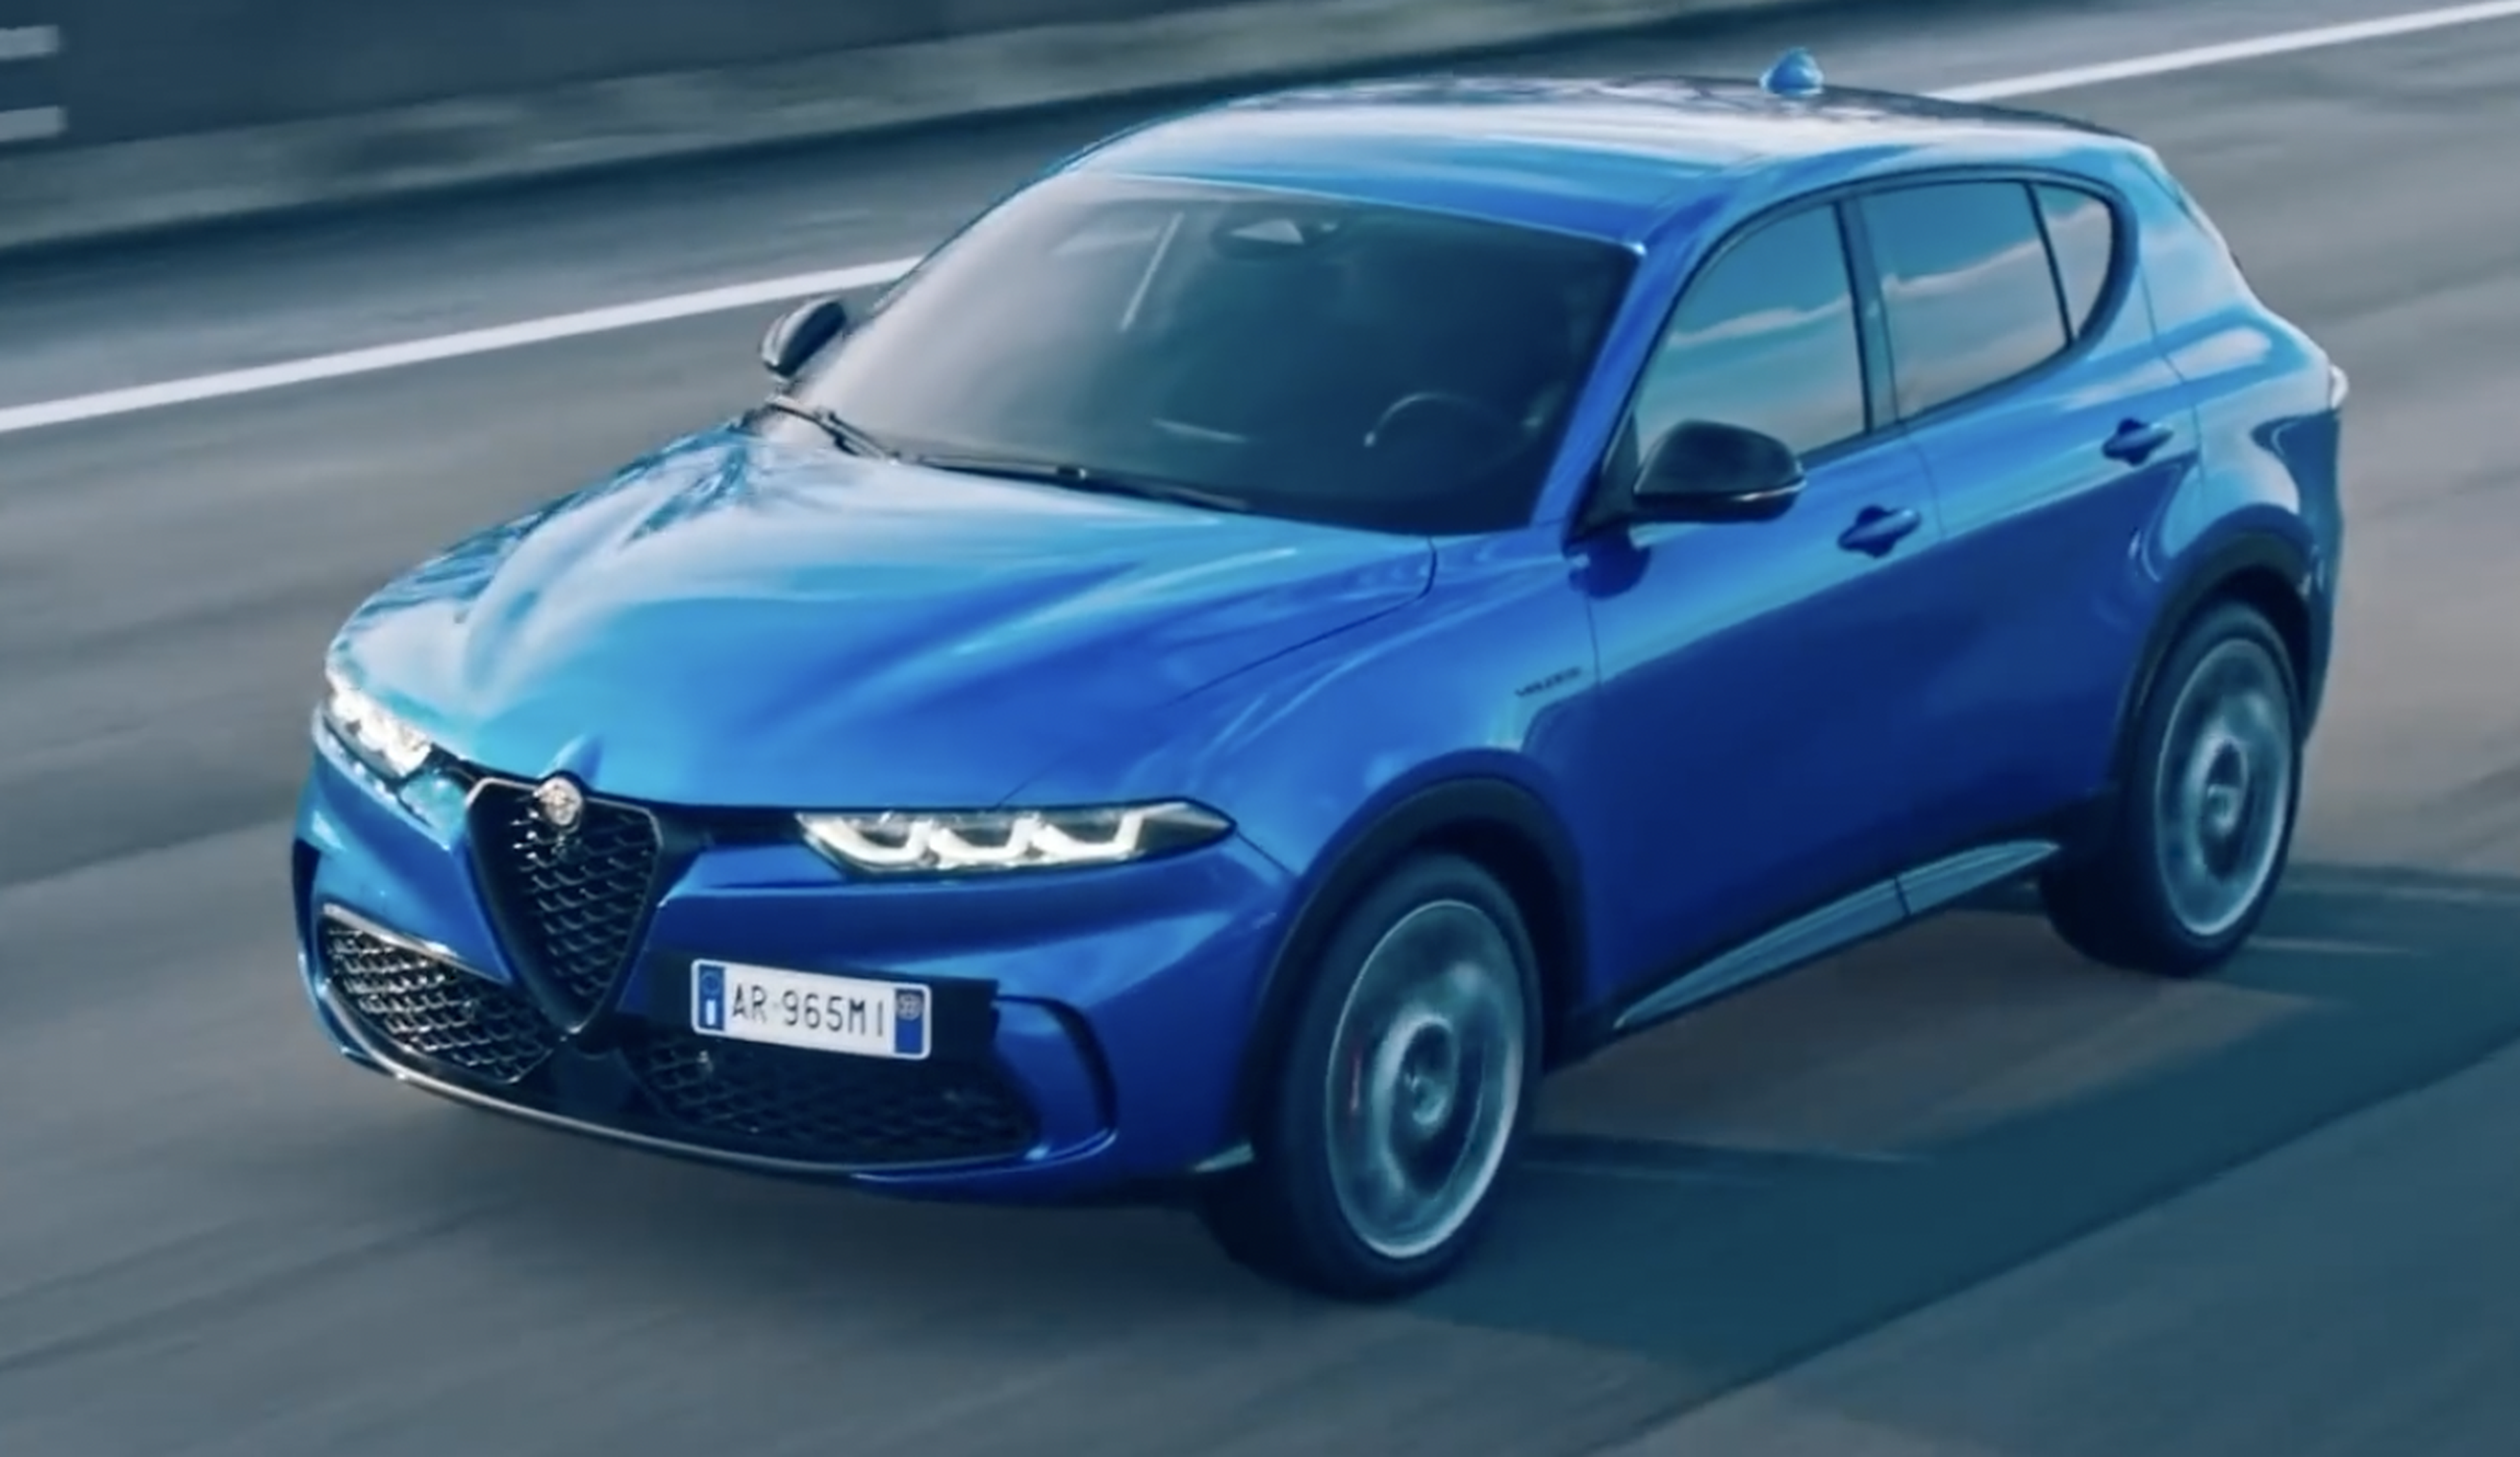 VÍDEO: Prueba del Alfa Romeo Tonale, ¿mejor que un Audi Q3 o un BMW X1?